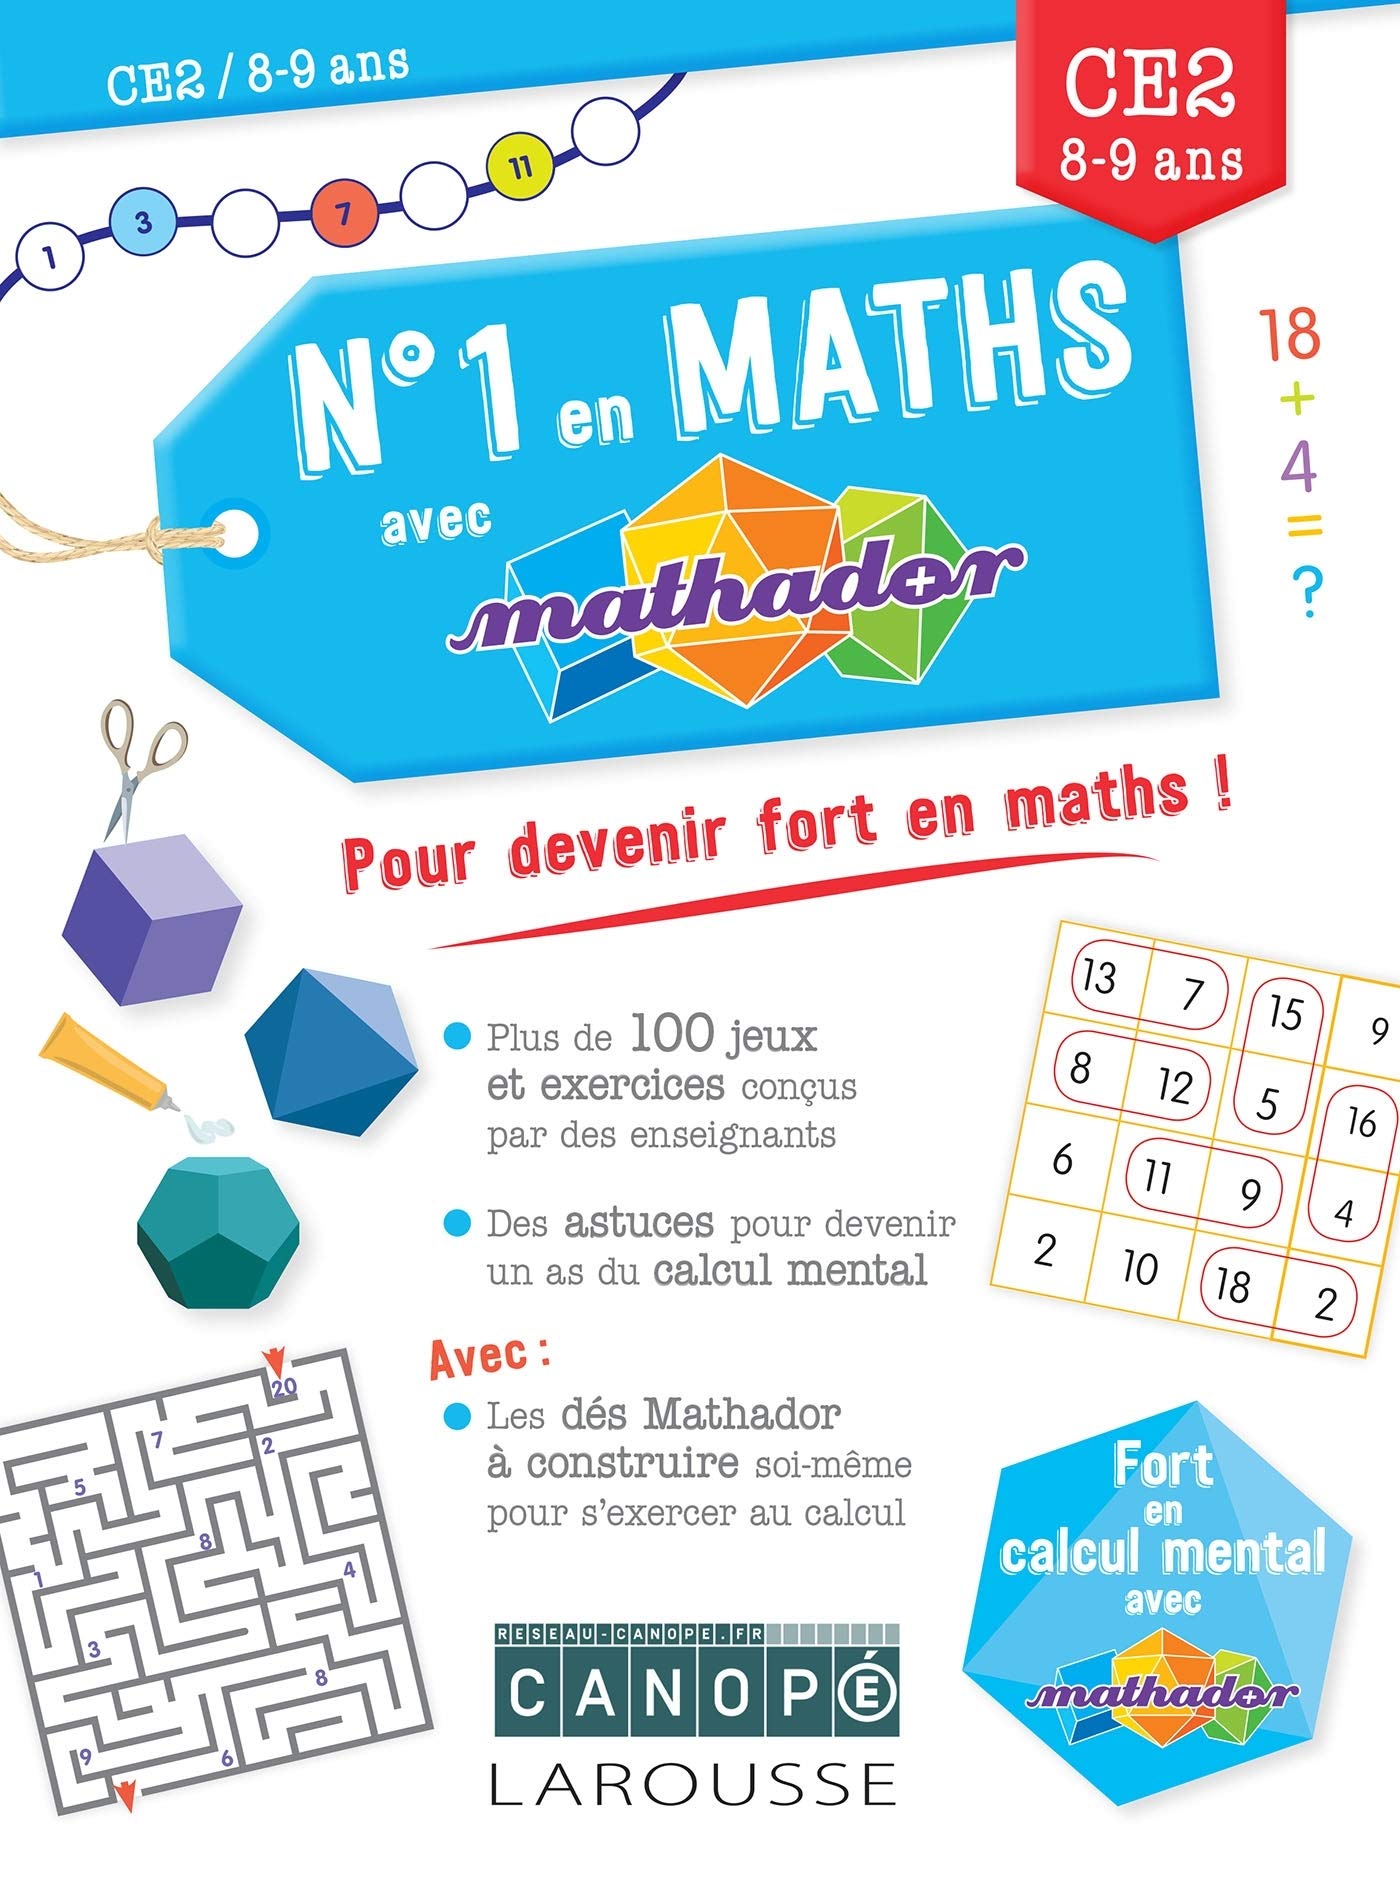 image Numéro 1 en maths avec Mathador CE2